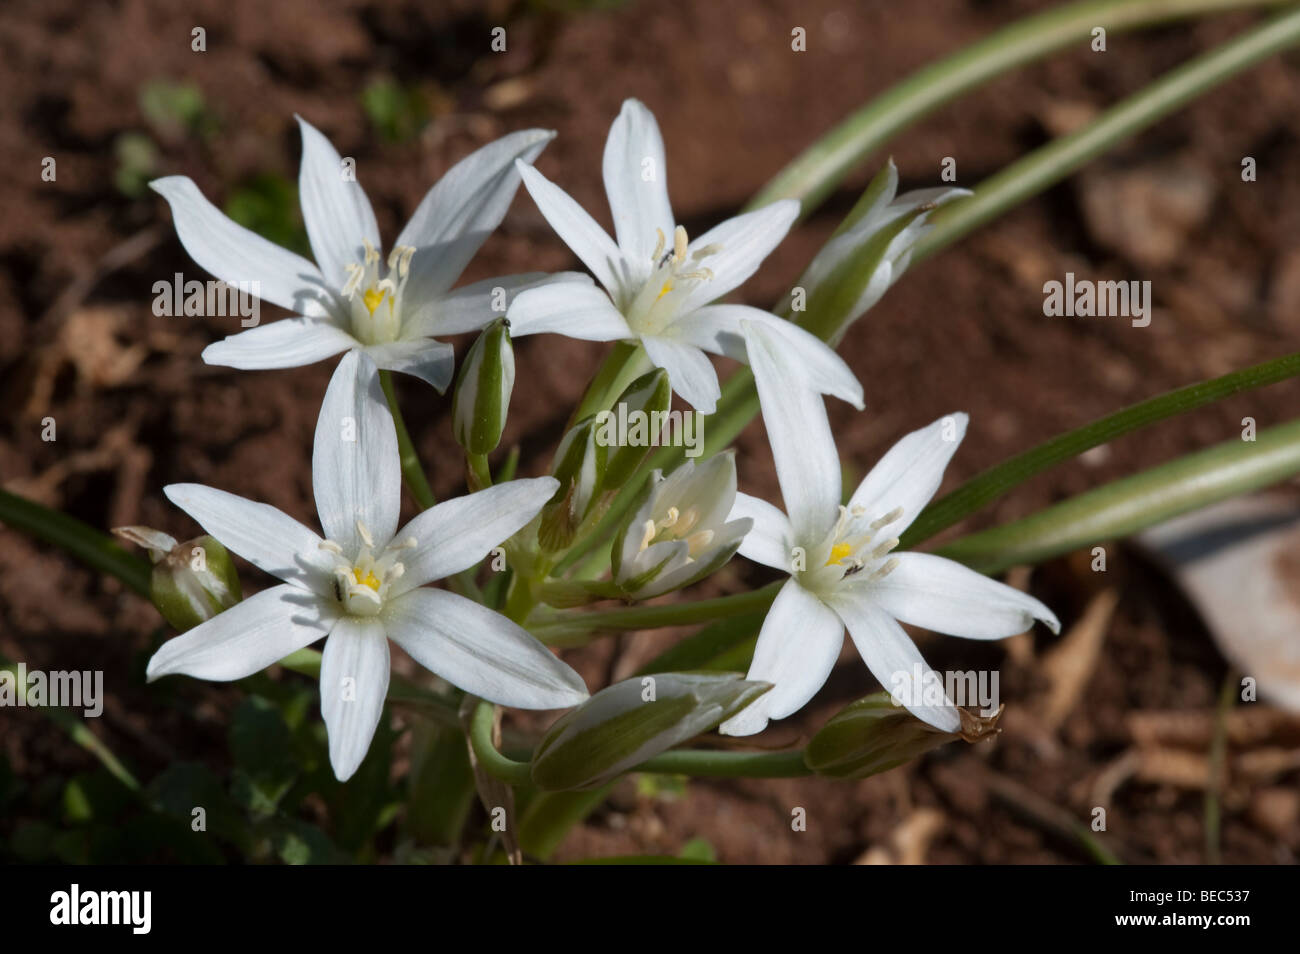 Star of Bethlehem (Ornithogalum orthophyllum) Stock Photo